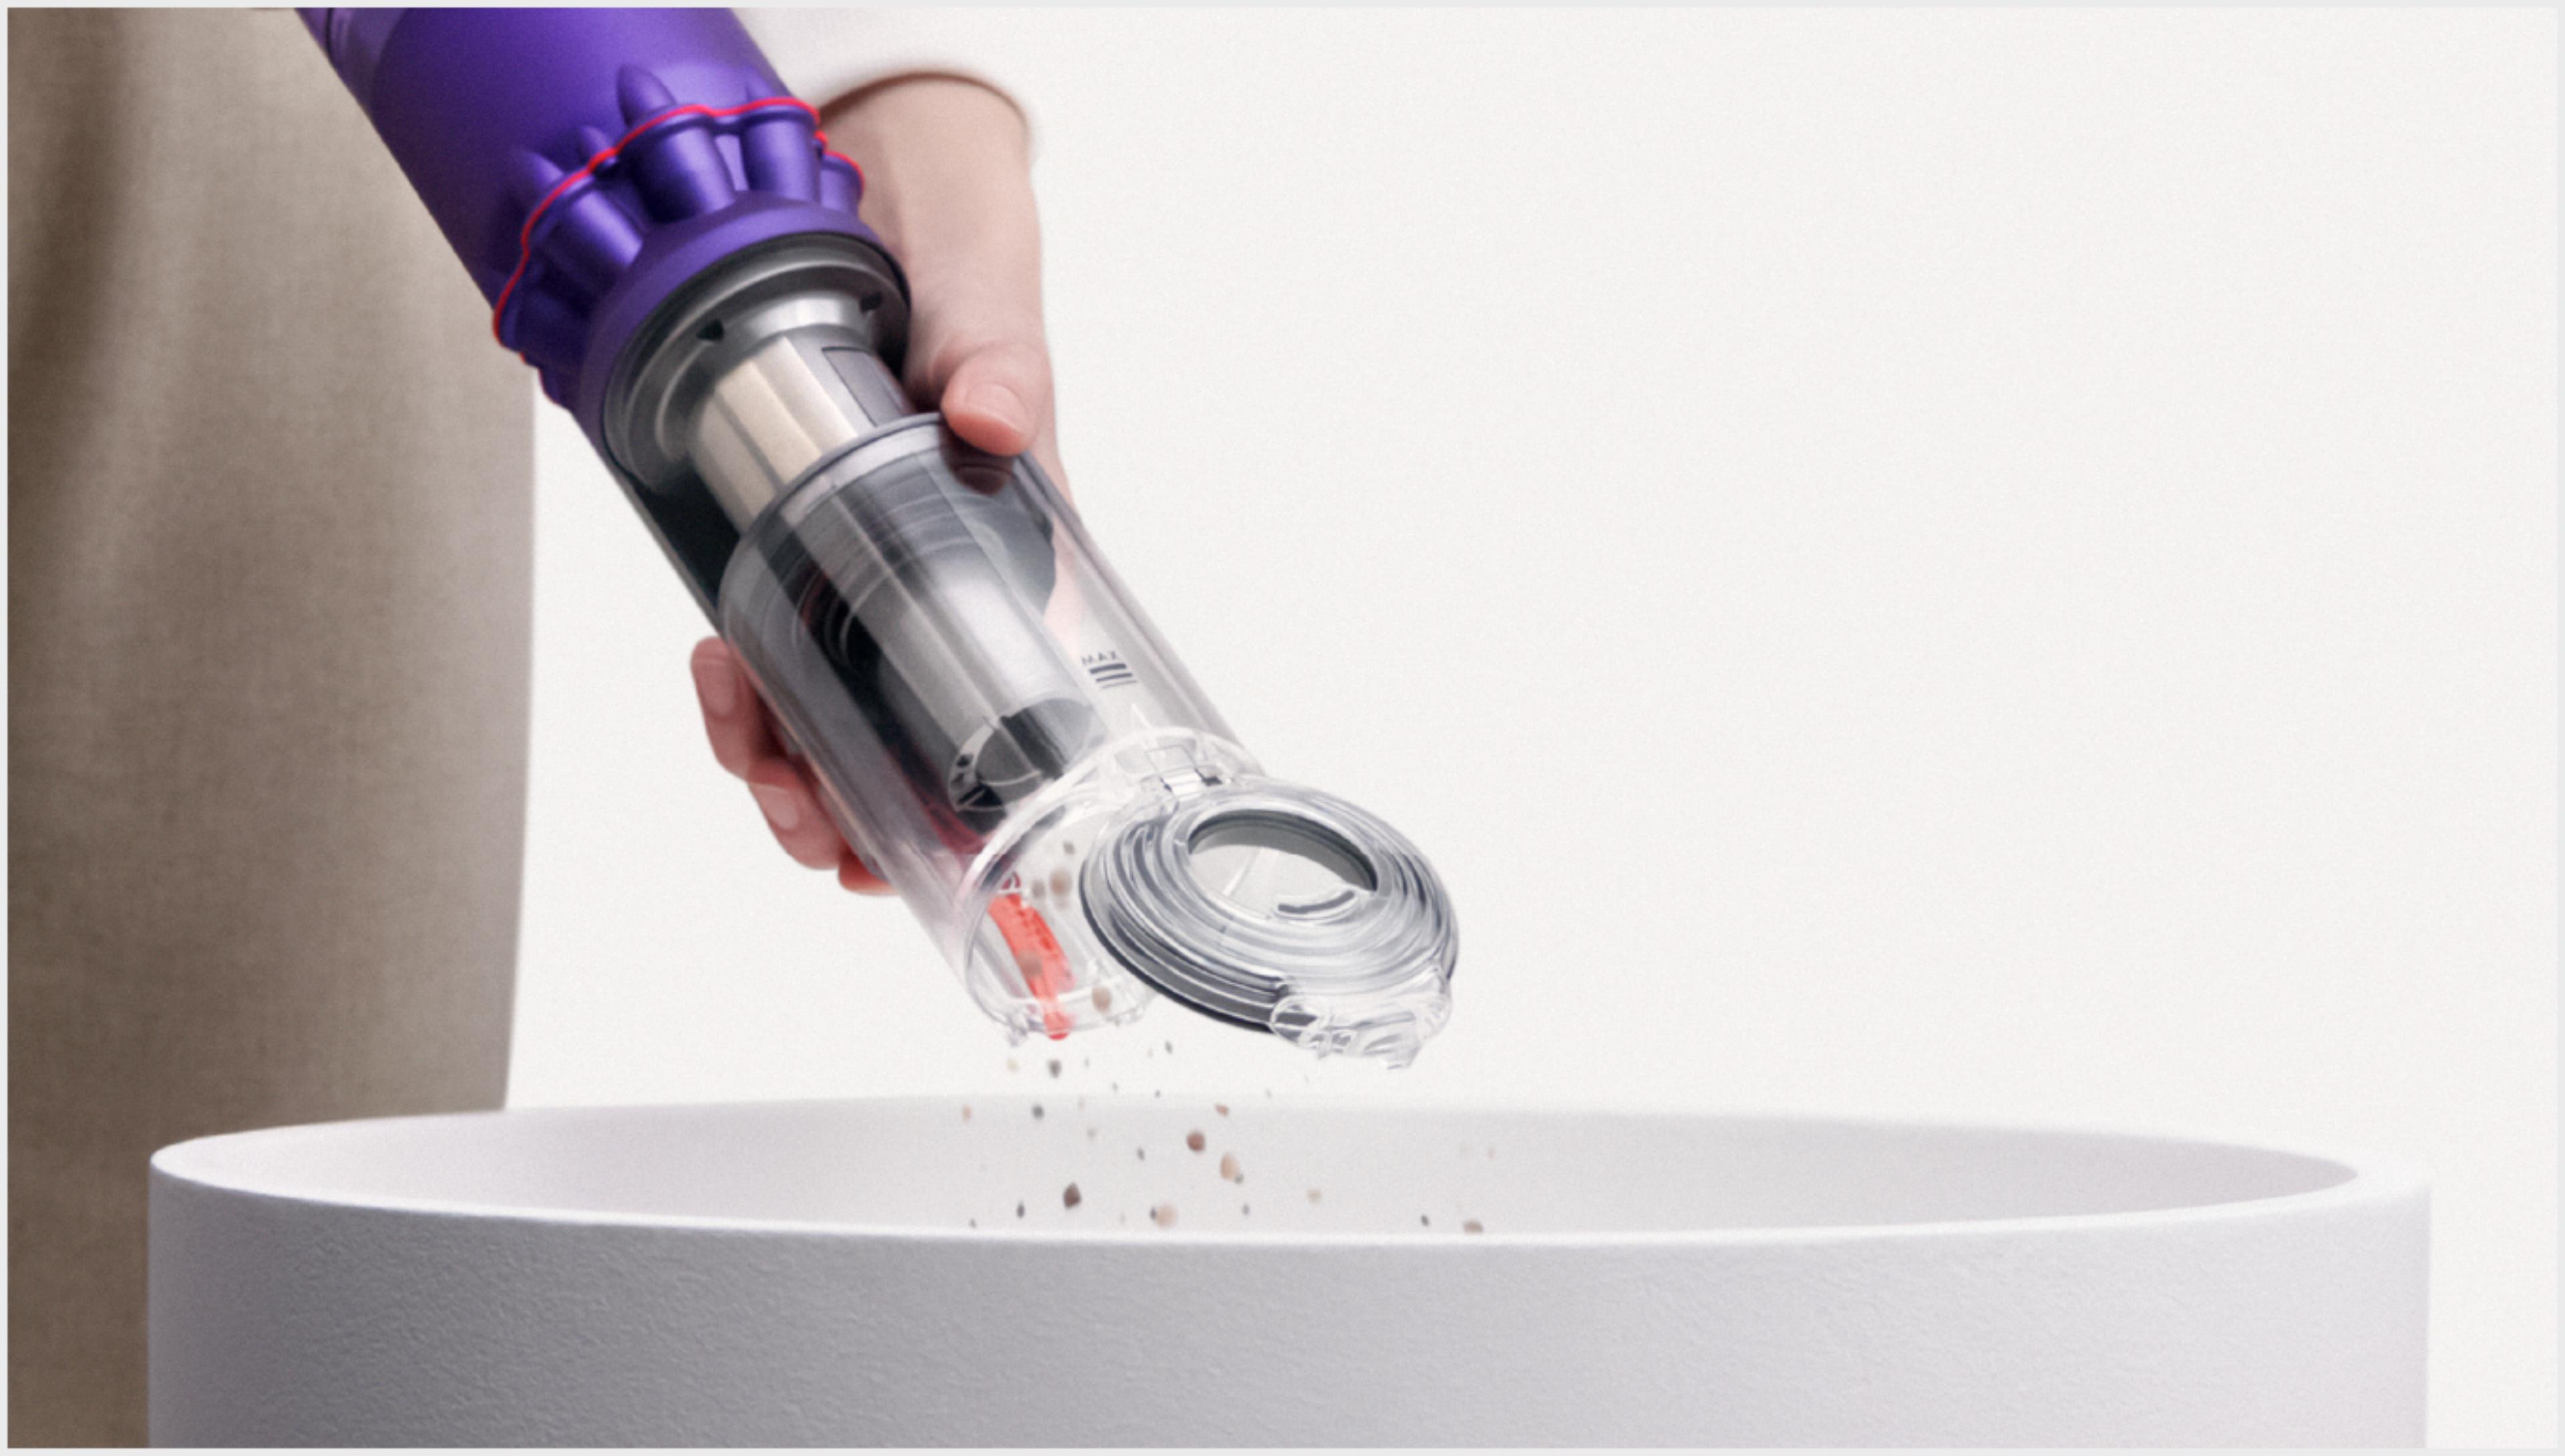 쓰레기통에 다이슨 옴니-글라이드™+ 무선 청소기의 먼지통 비우는 모습.